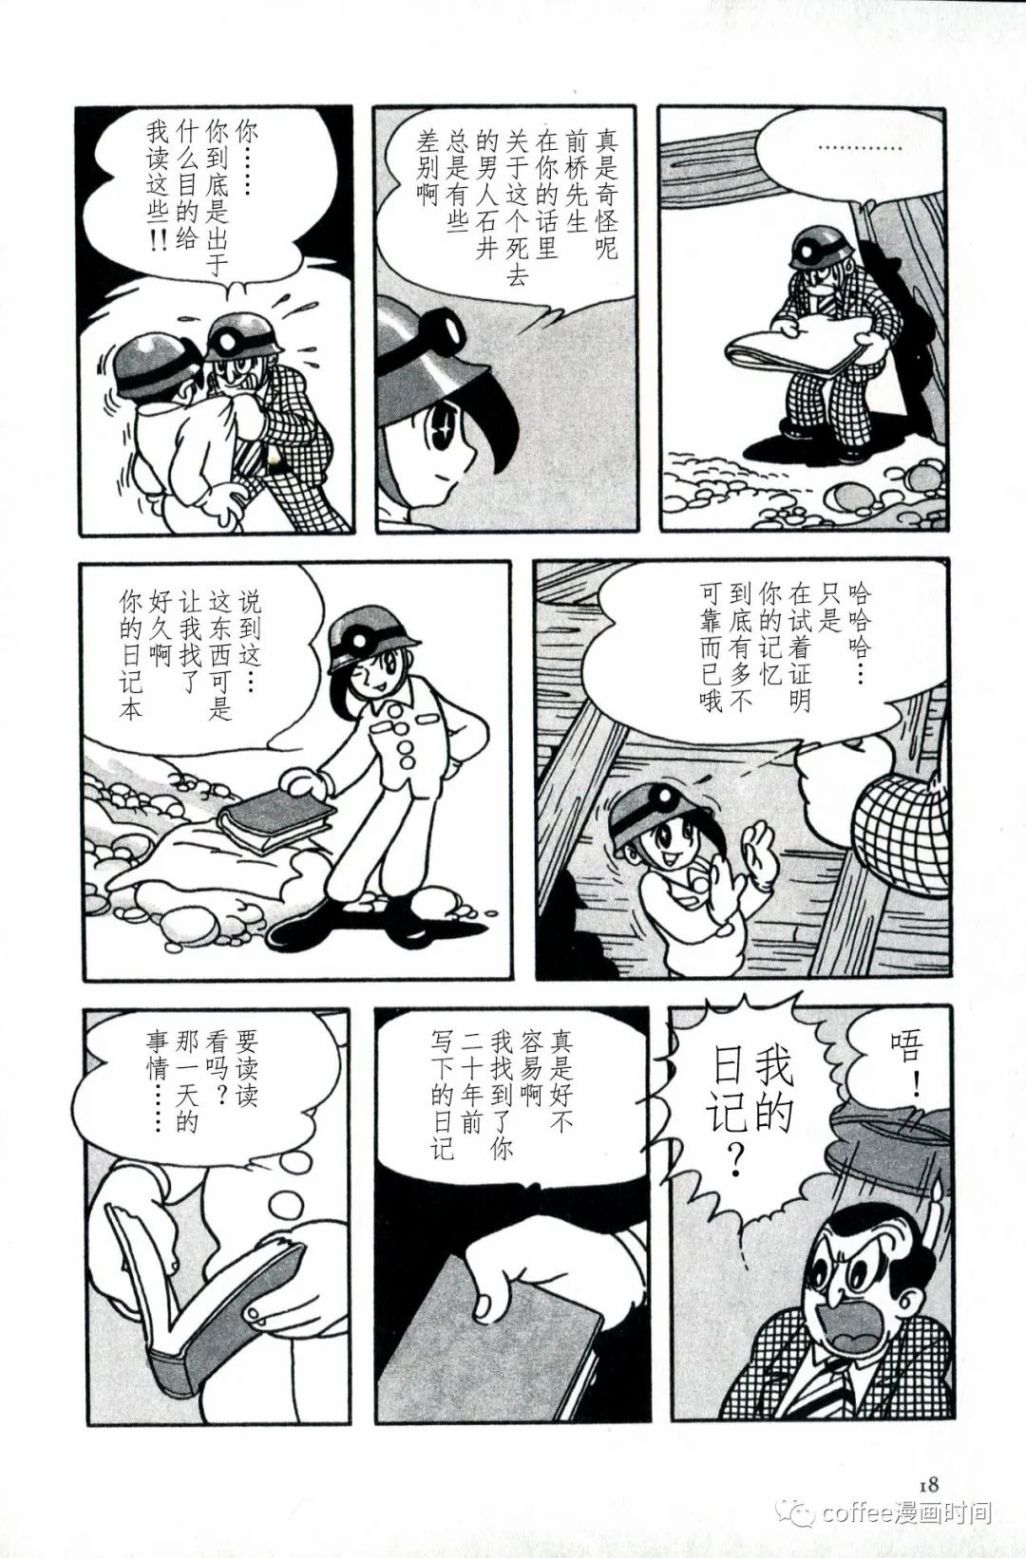 日本短篇漫畫傑作集 - 手冢治虫《落盤》 - 4